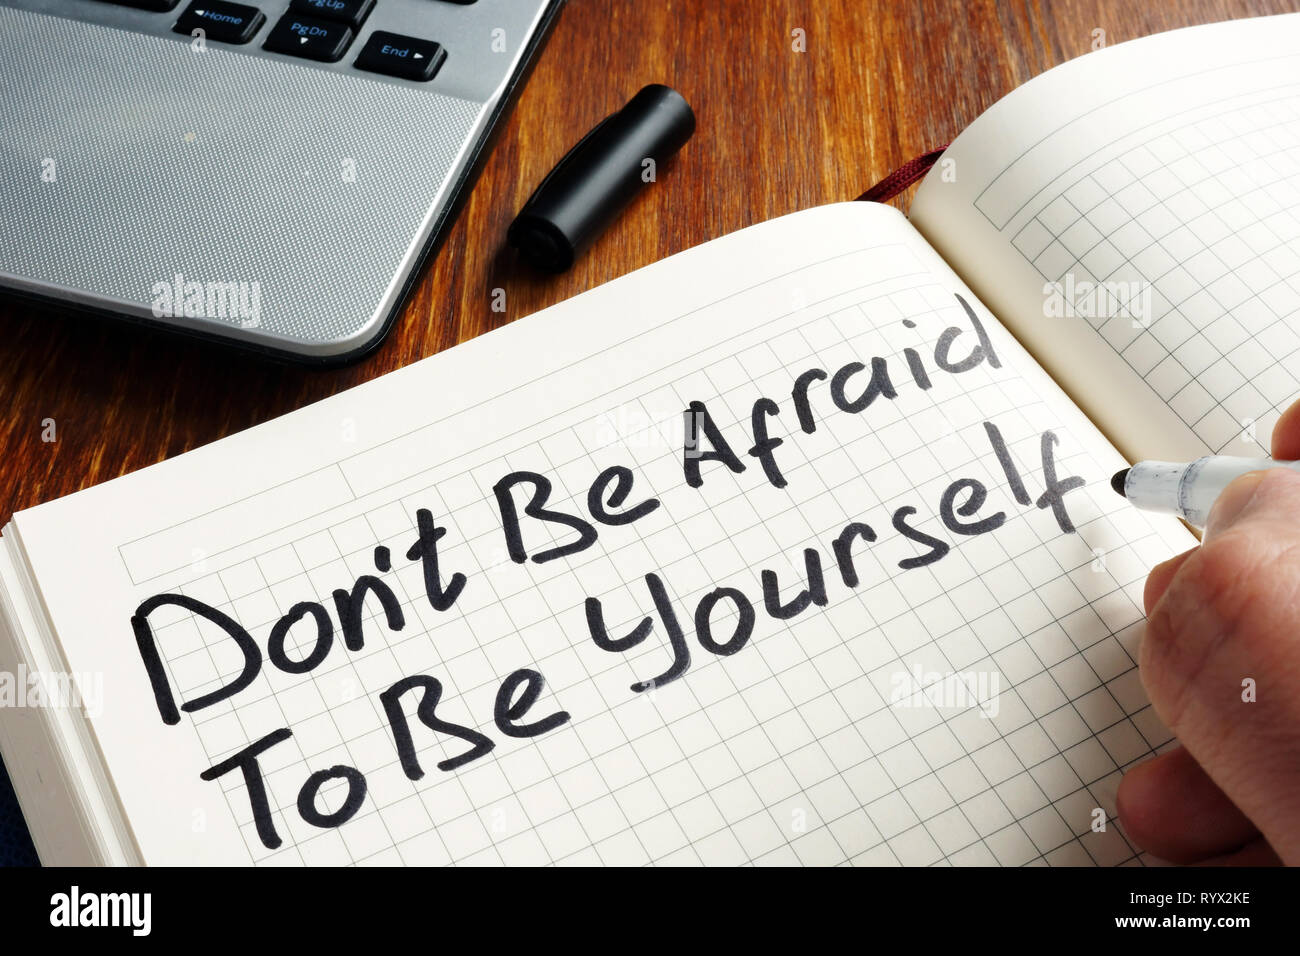 Non abbiate paura di essere voi stessi scritti a mano in una nota. La motivazione del preventivo. Foto Stock